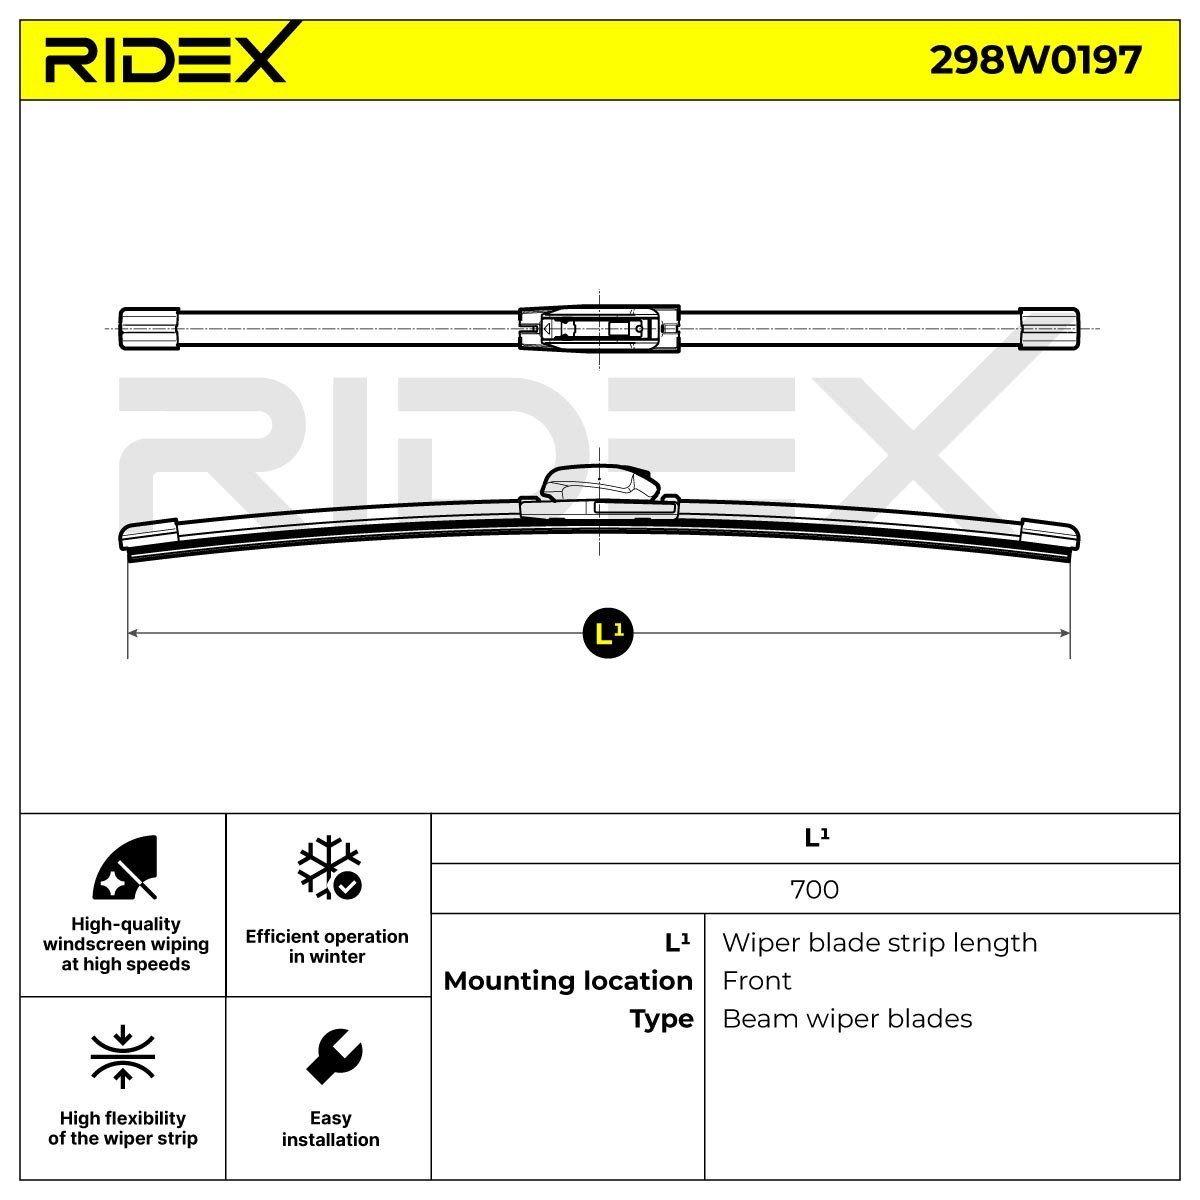 RIDEX Windscreen wipers 298W0197 buy online